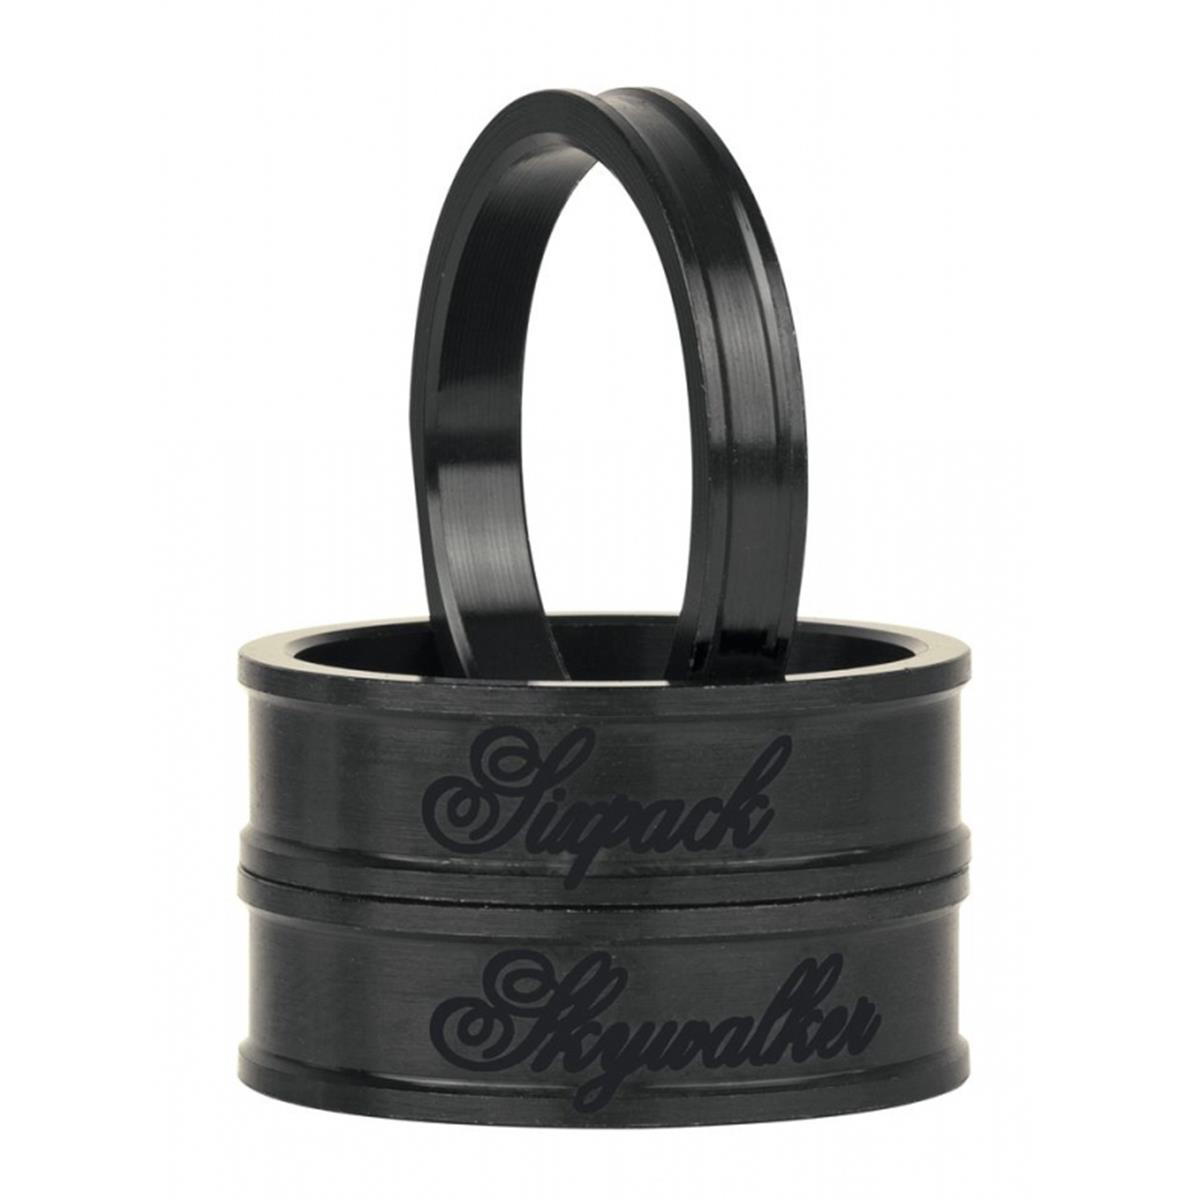 Sixpack Entretoises de Direction Skywalker Stealth Black, 1 1/8 Inches, 3 Pcs., 1 x 5 mm, 2 x 10 mm